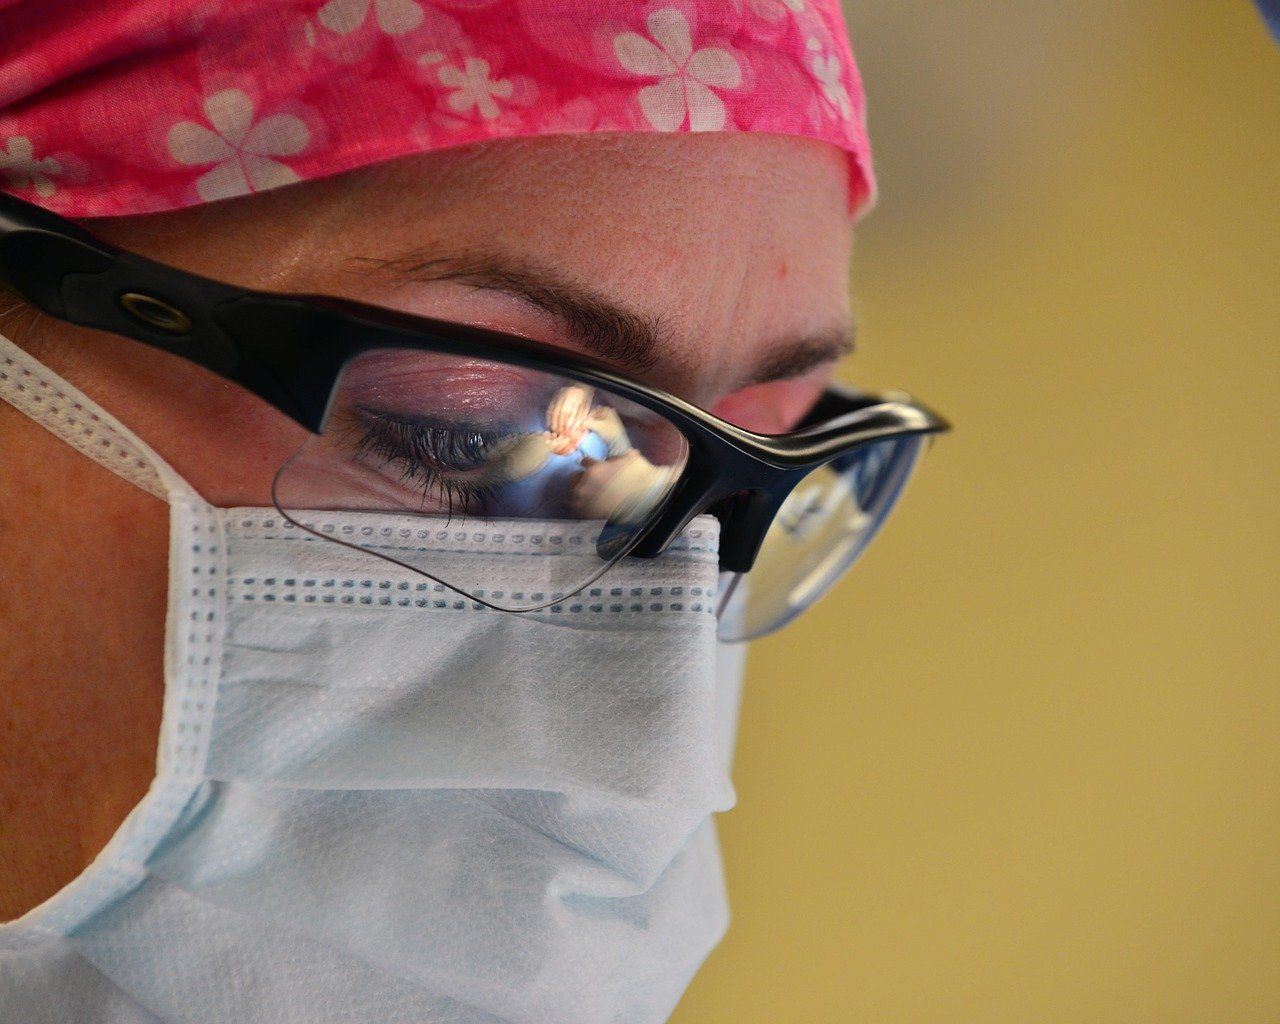 Medic specialist în boli infecțioase: „Ieșim cu pielea înroşită, cu urme pe față de la mască”